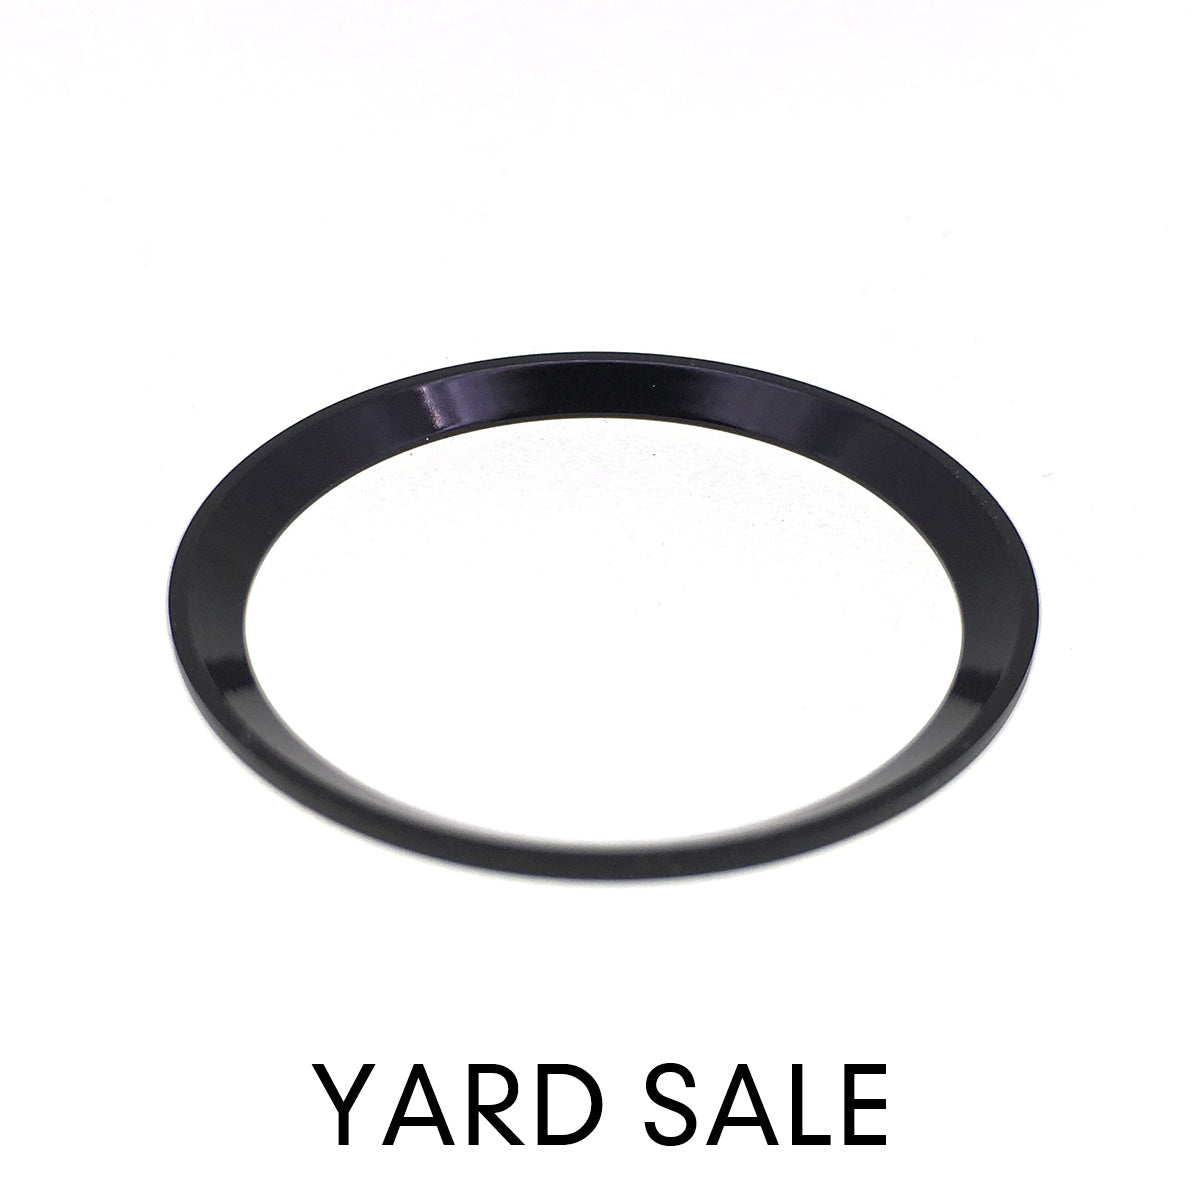 YARD SALE - C.R. - Urchin - Polished Black